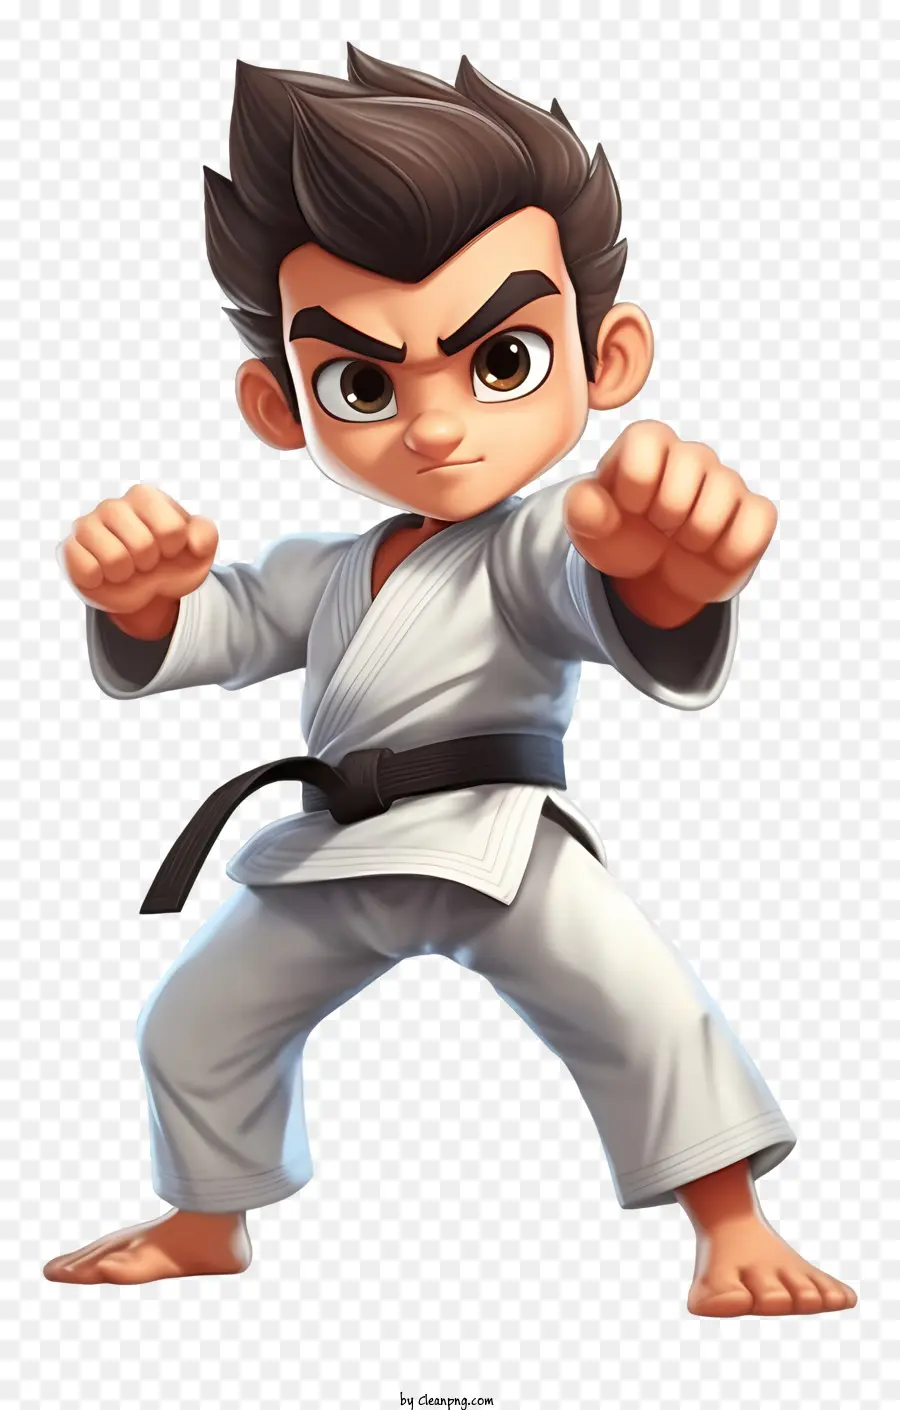 Karate chiến đấu karate võ thuật trang phục karate màu đen - Thanh niên mặc đồng phục karate với biểu hiện quyết tâm